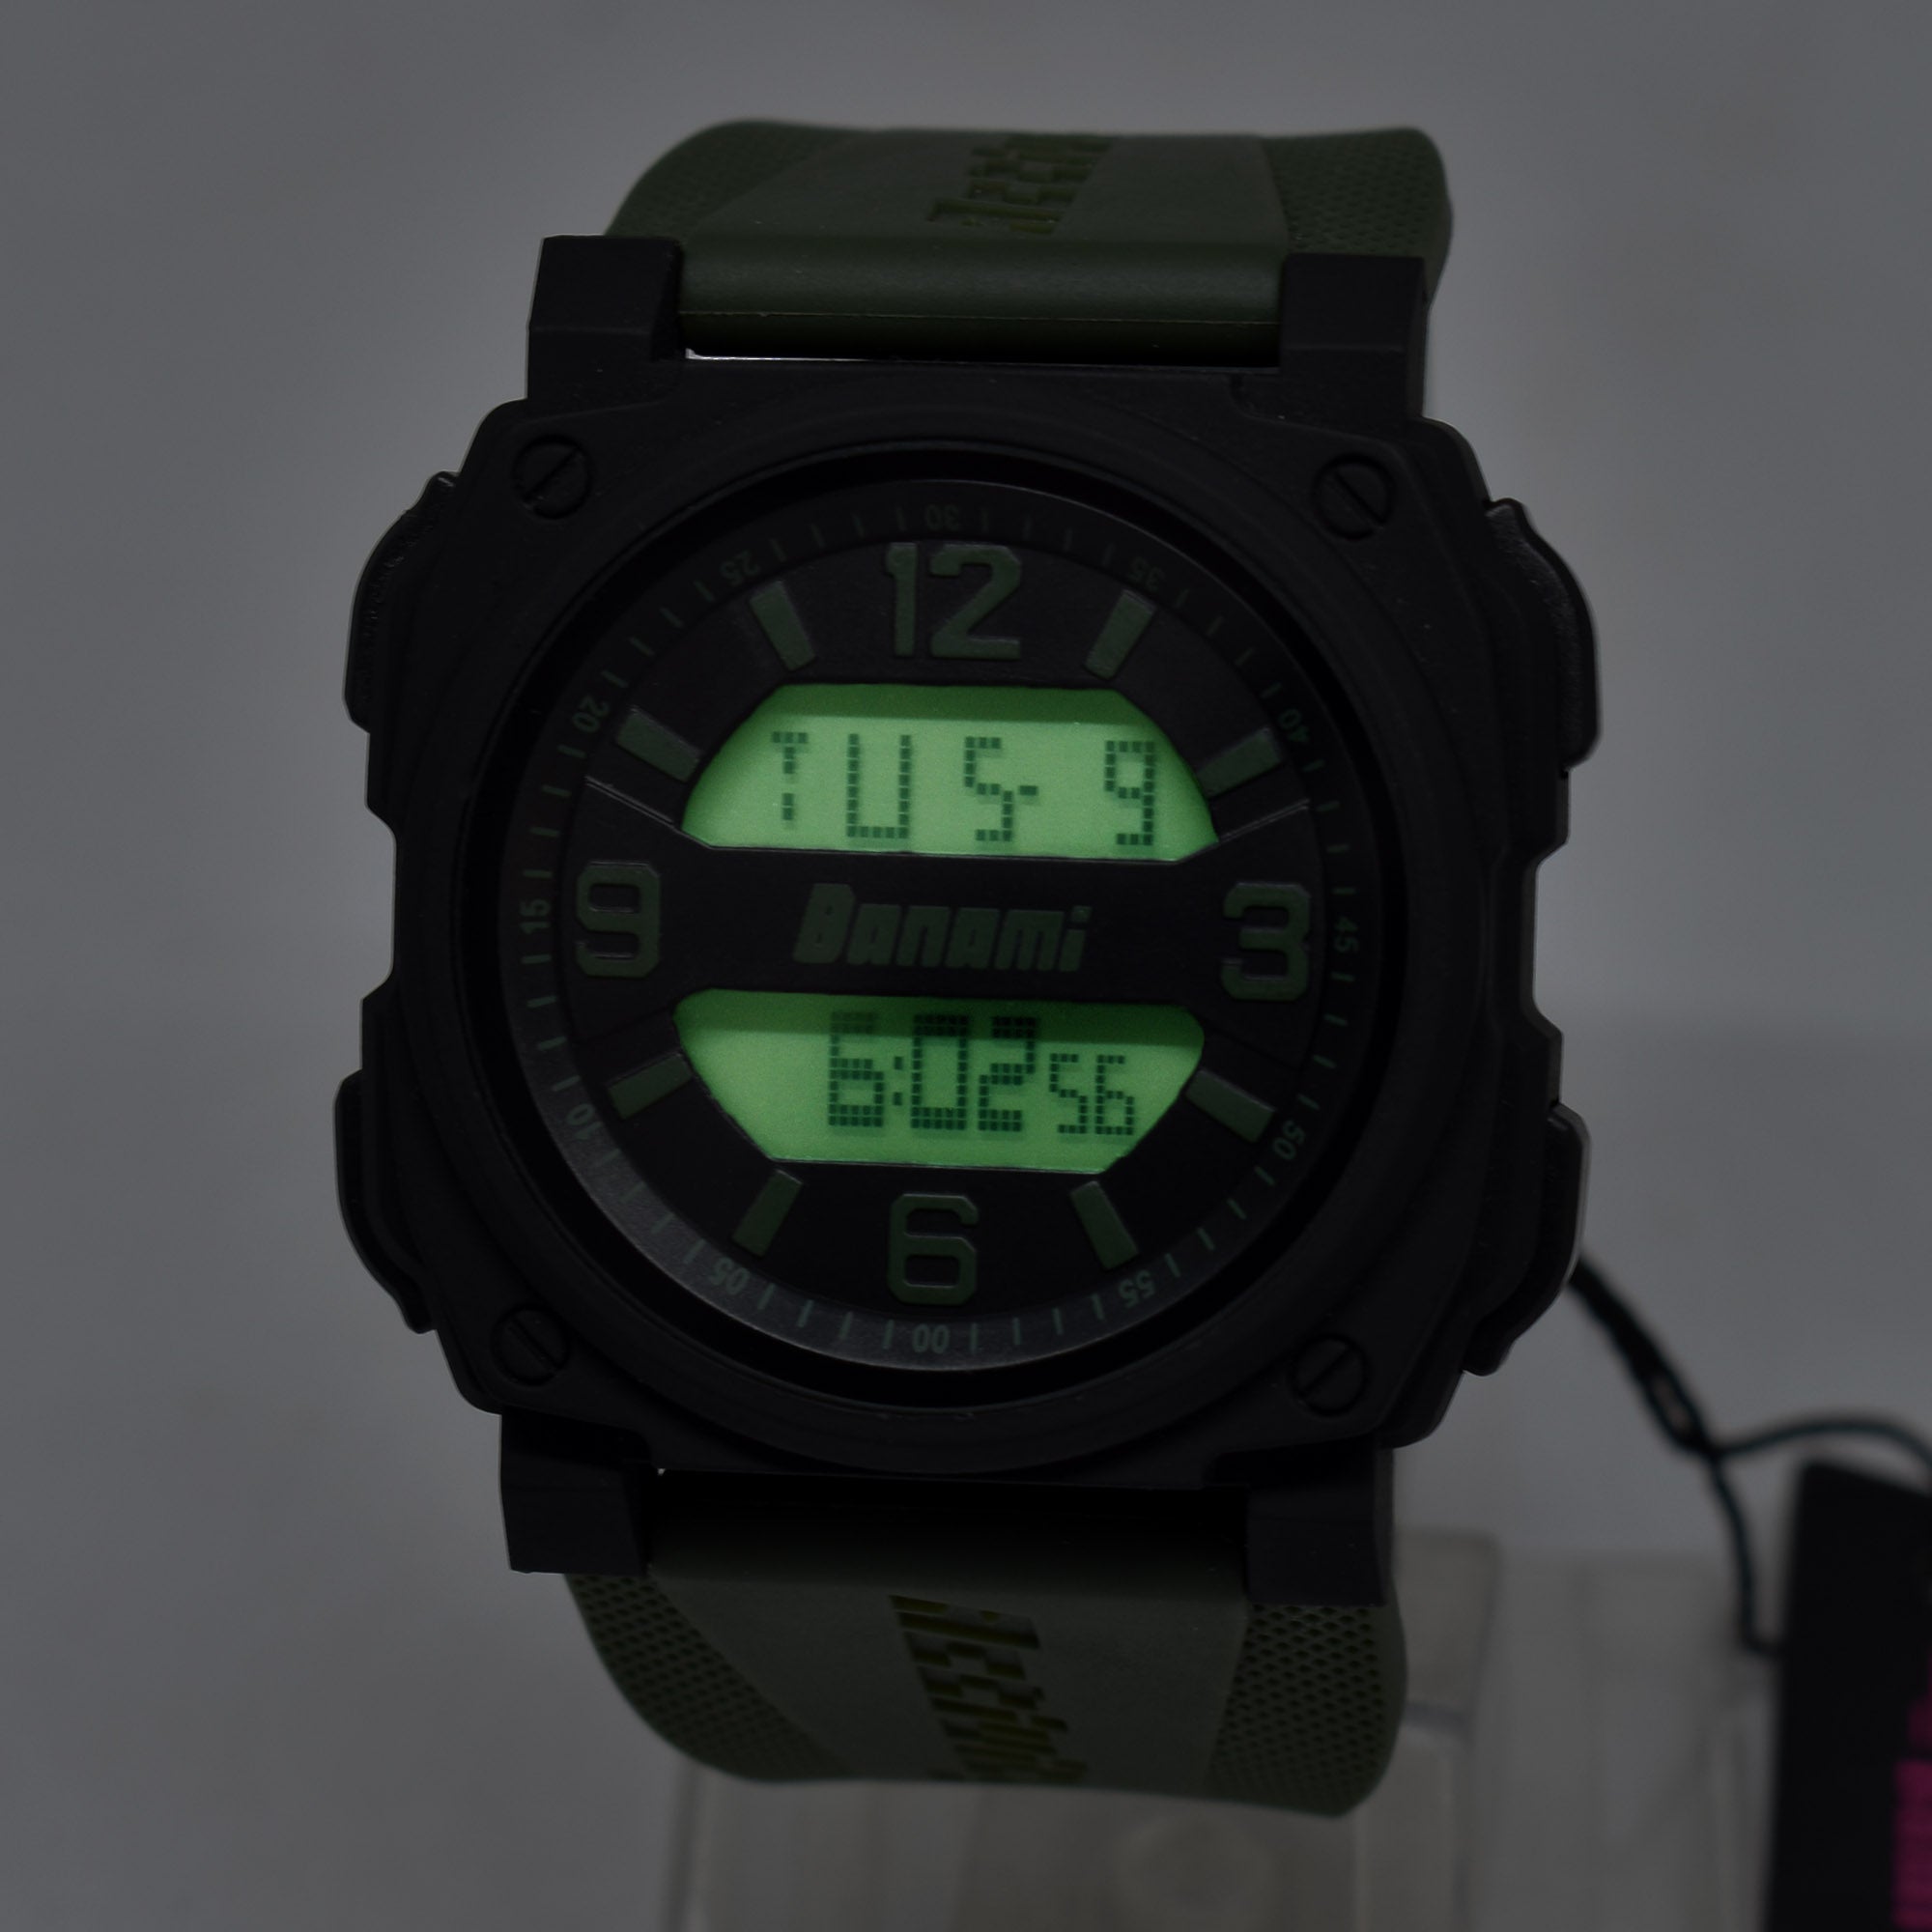 BNMI 1810g Digital 100% Waterproof Sport-Casual watch